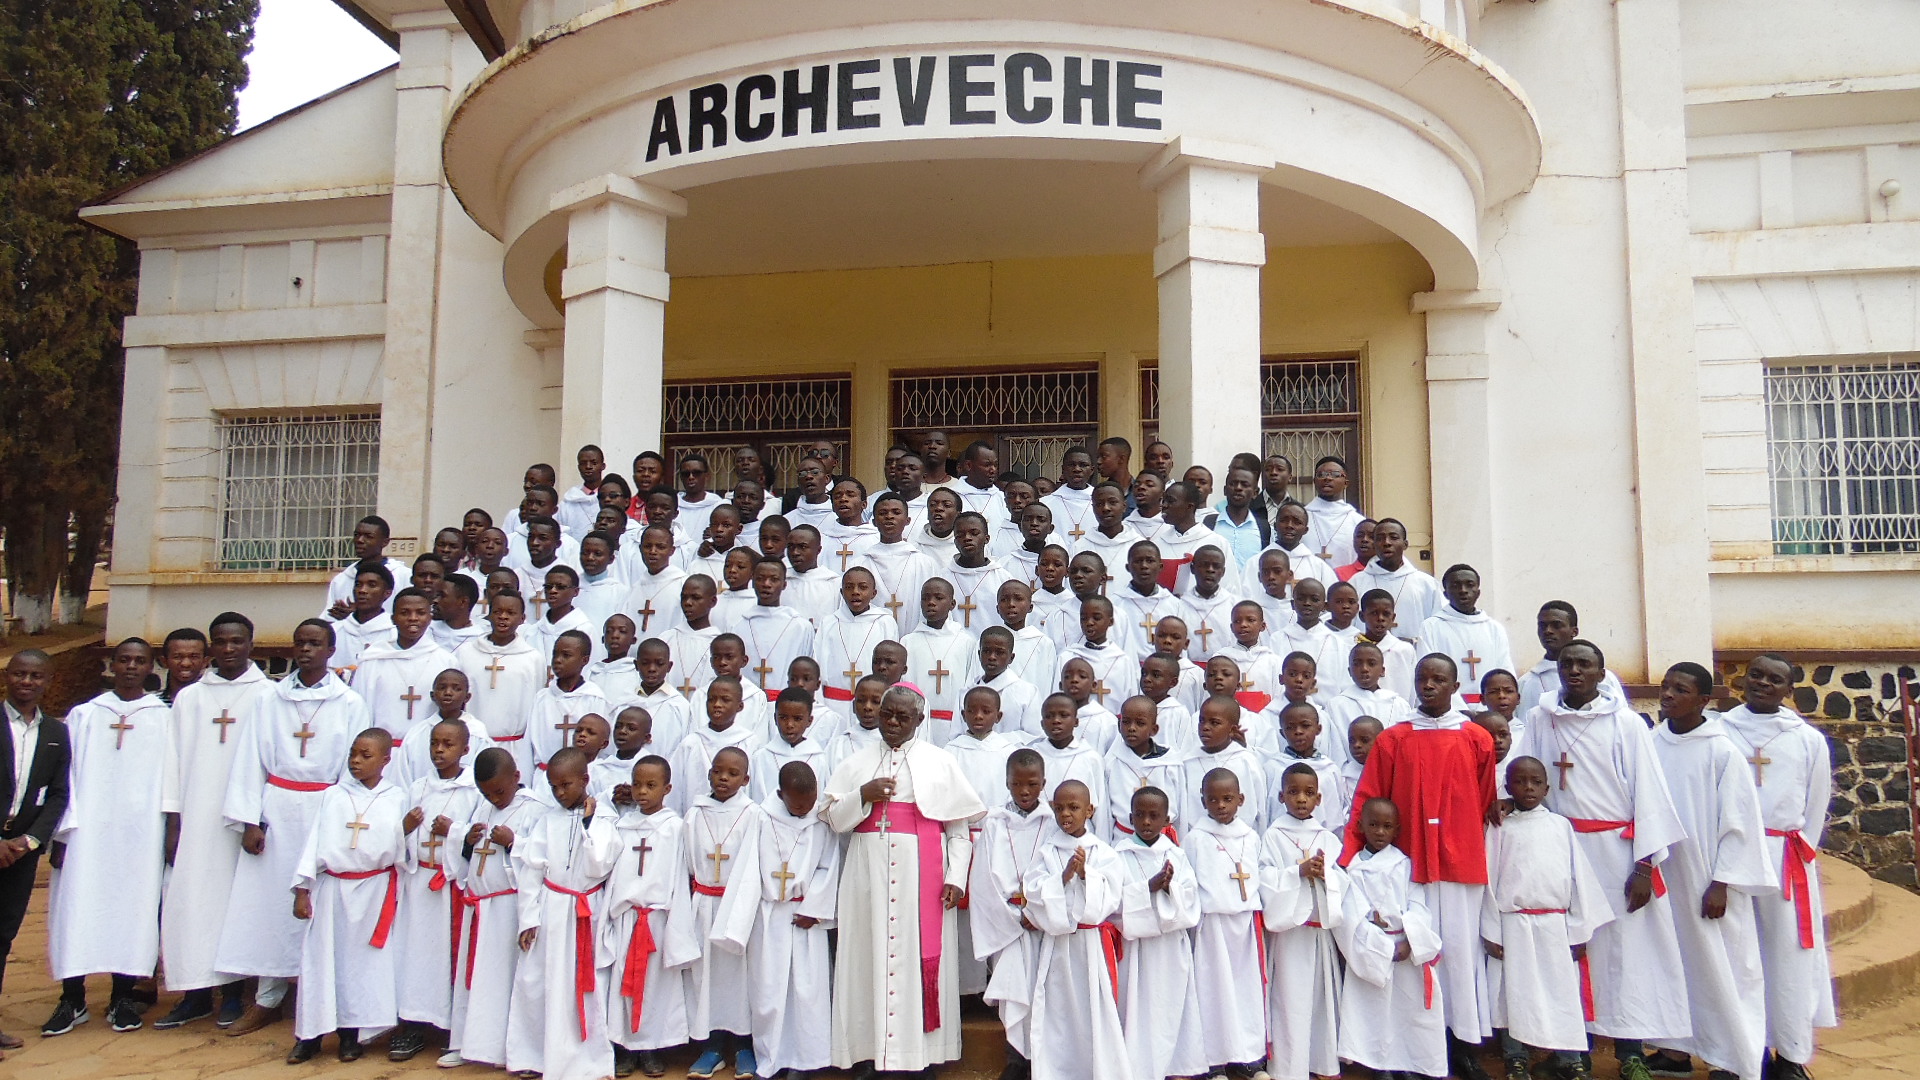 Les Petits Chanteurs de la Résurrection avec S.E. Mgr Francois-Xavier MAROY; Archevêque de Bukavu.